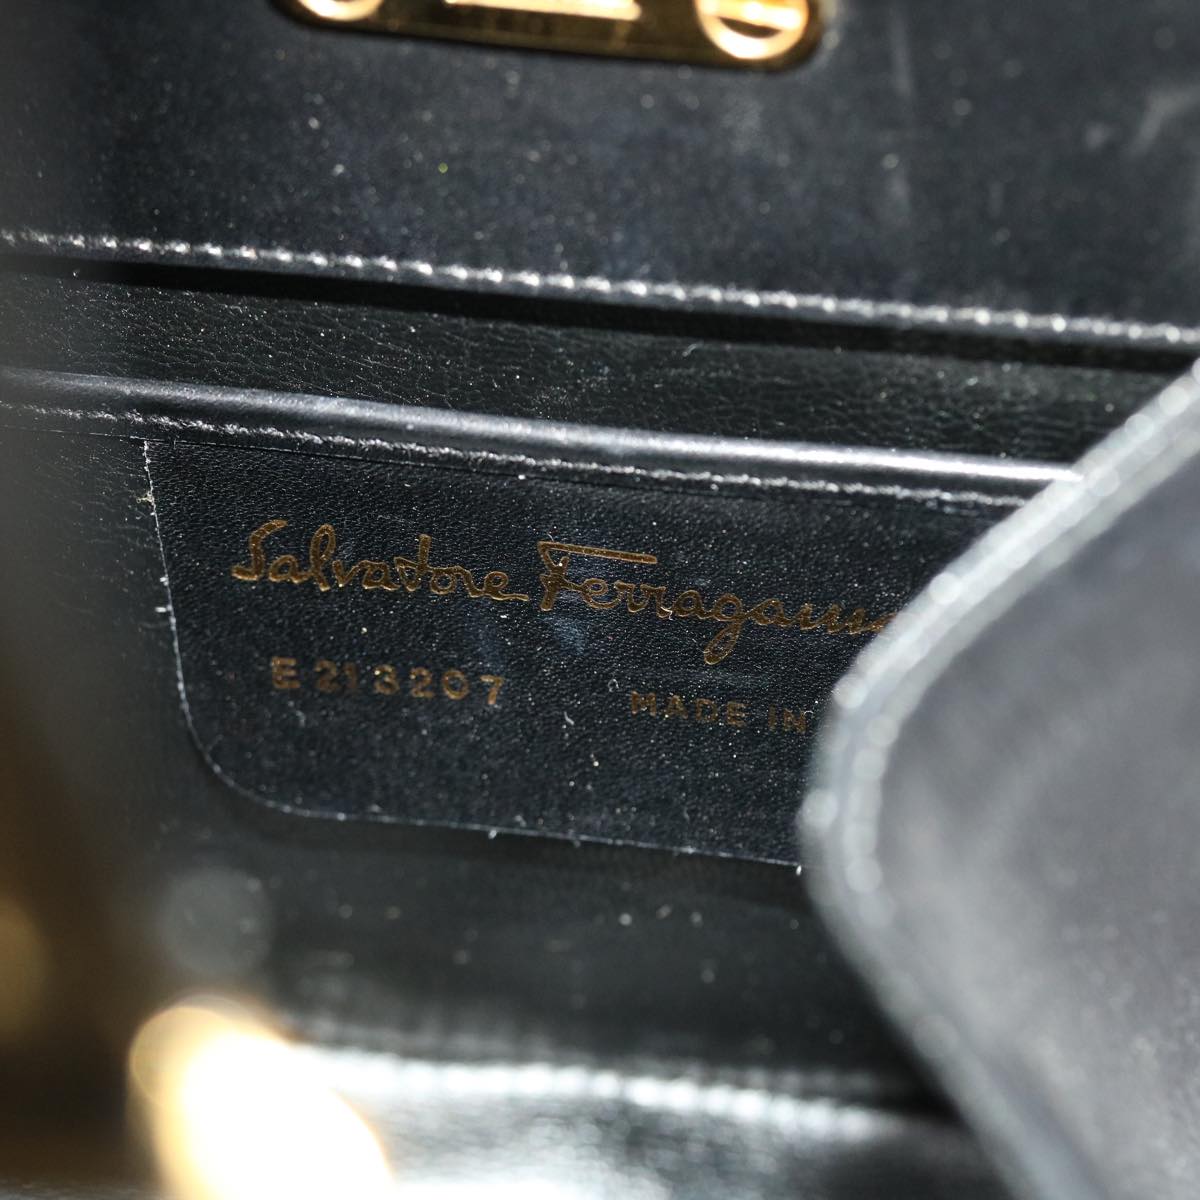 Salvatore Ferragamo Gancini Hand Bag Leather Black Auth 50191